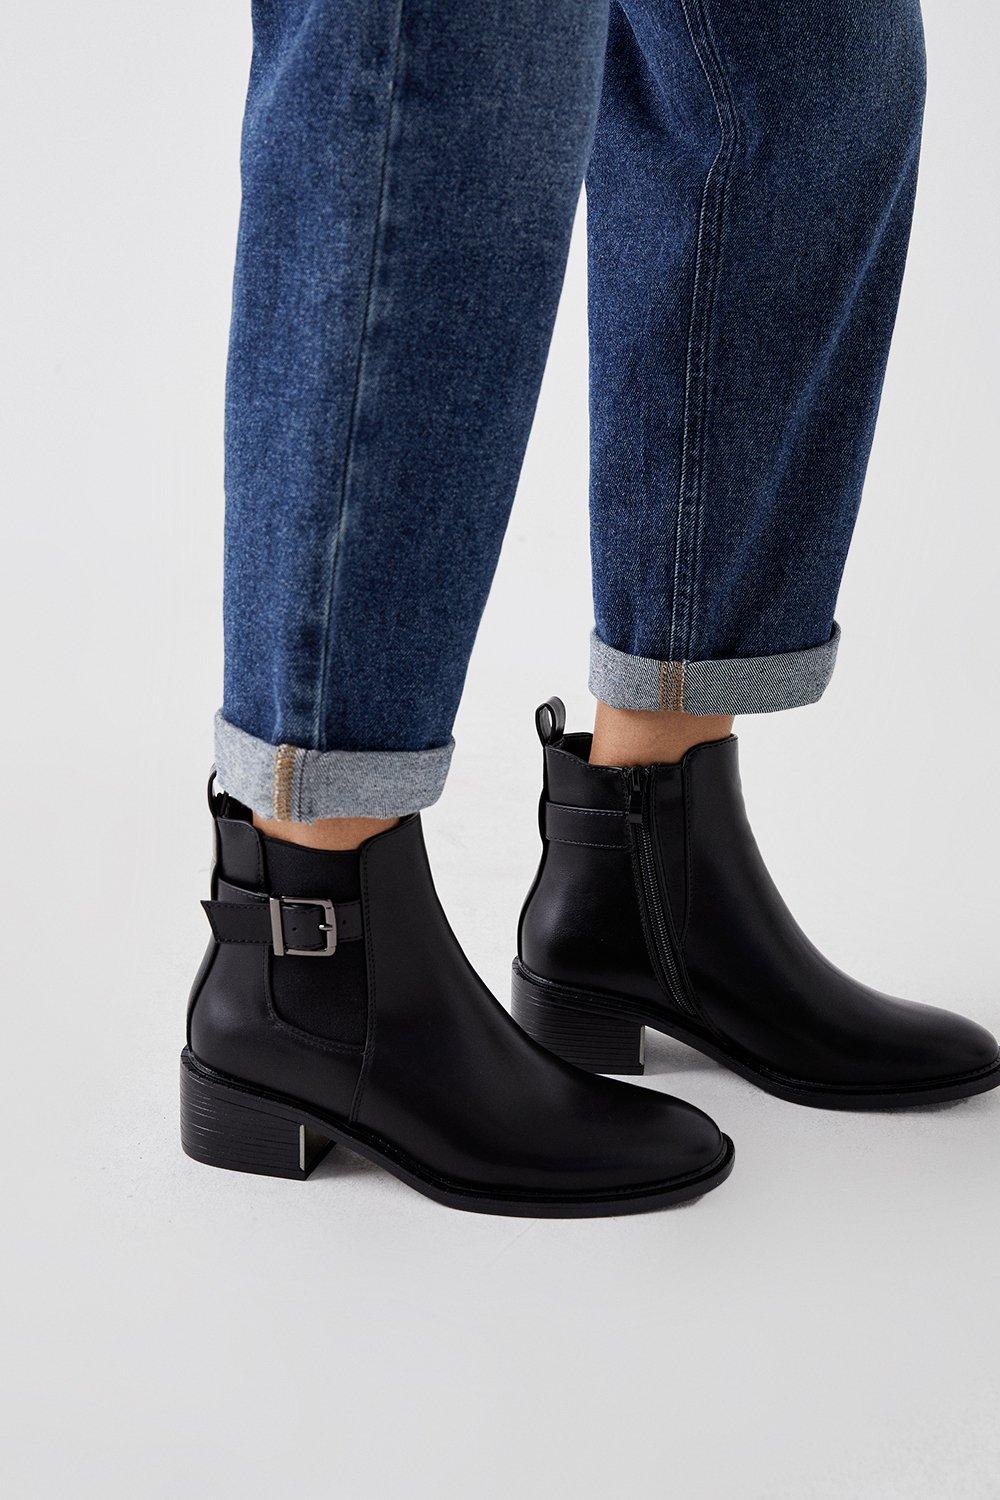 Women’s Faith: Andrea Buckle Trim Ankle Boots - black - 5